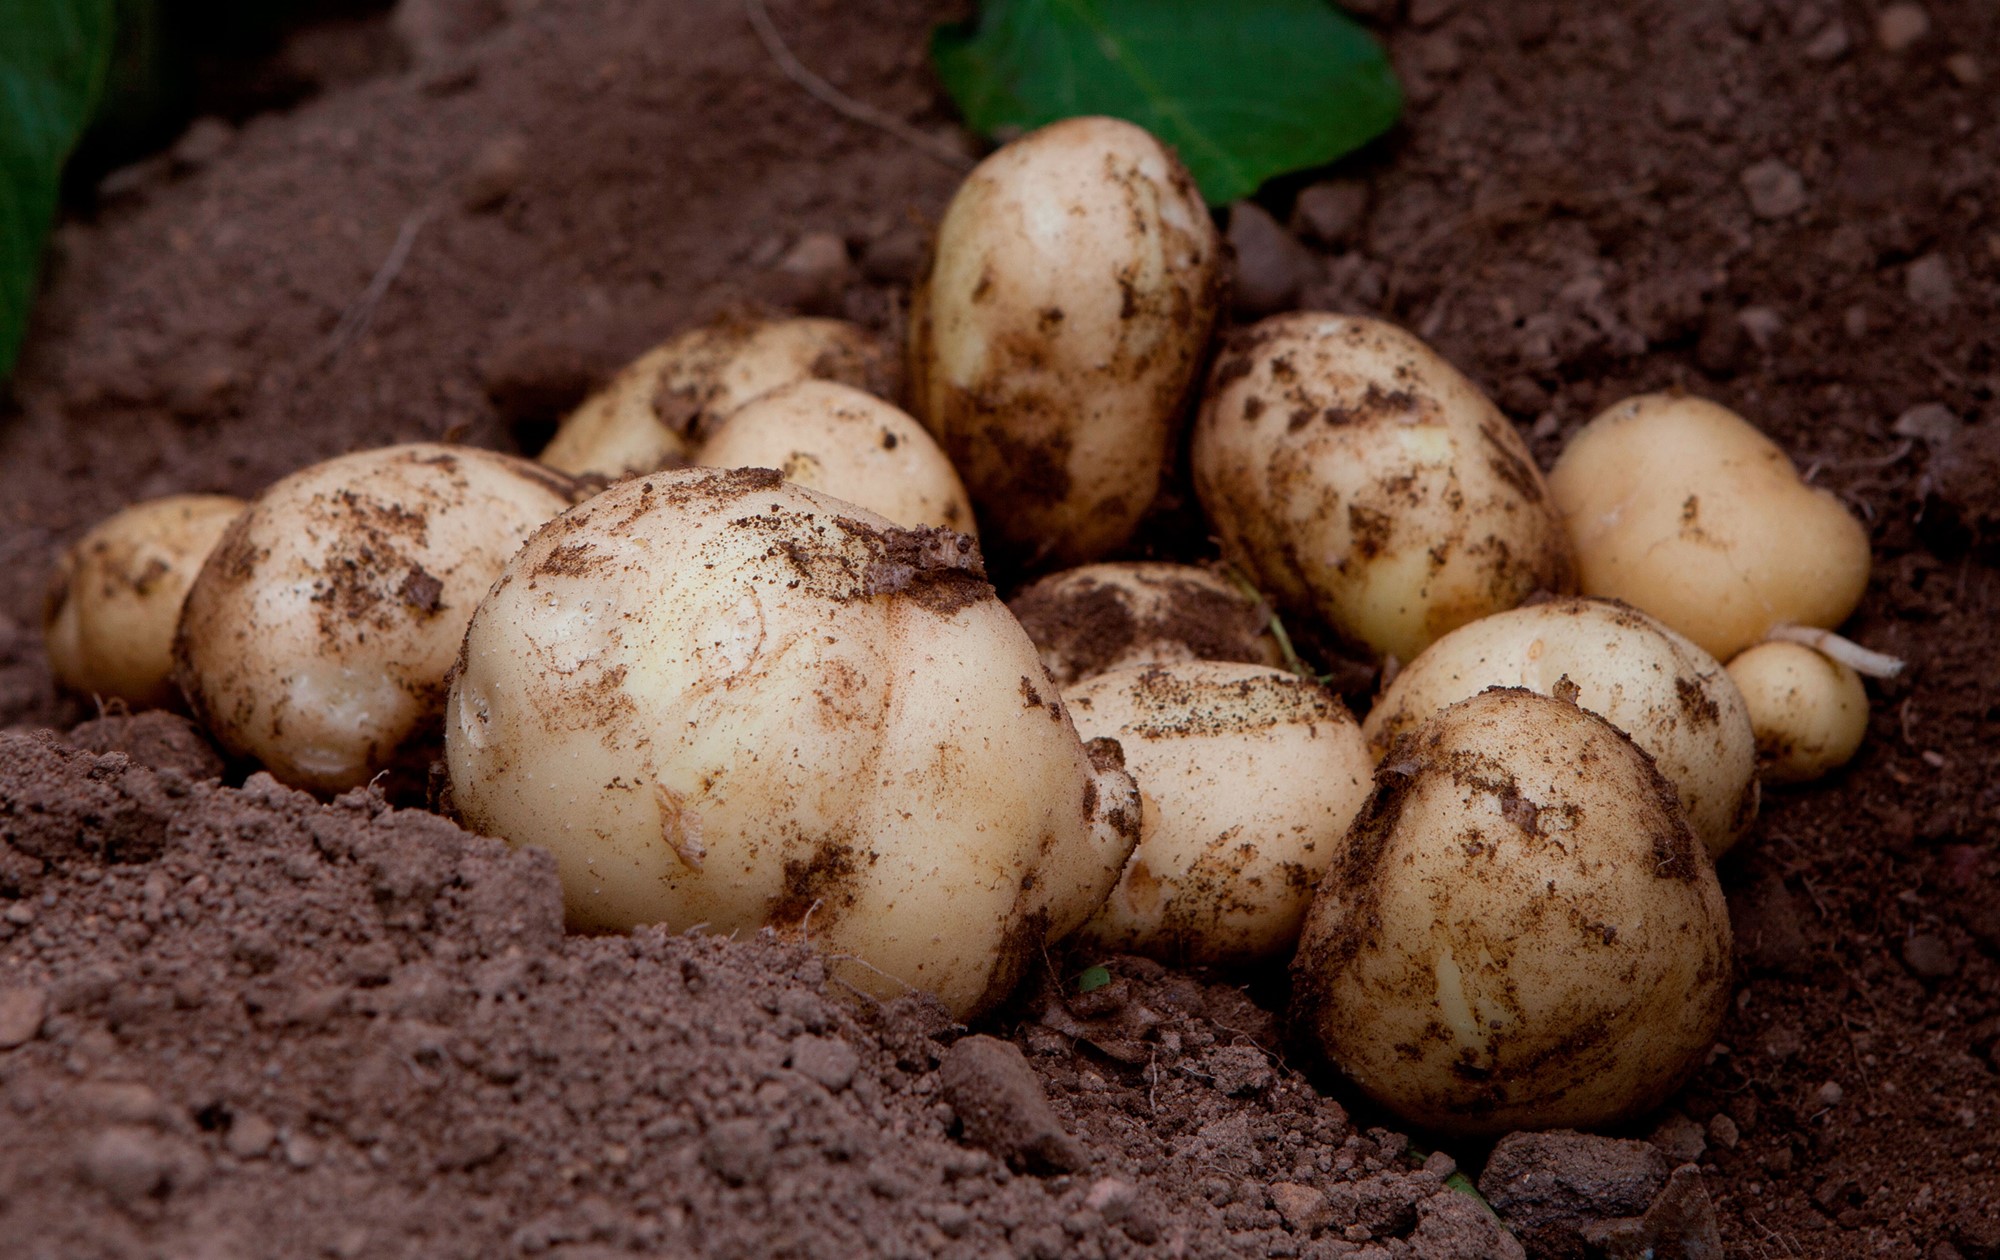 Potatis liggande i jorden direkt efter skörd